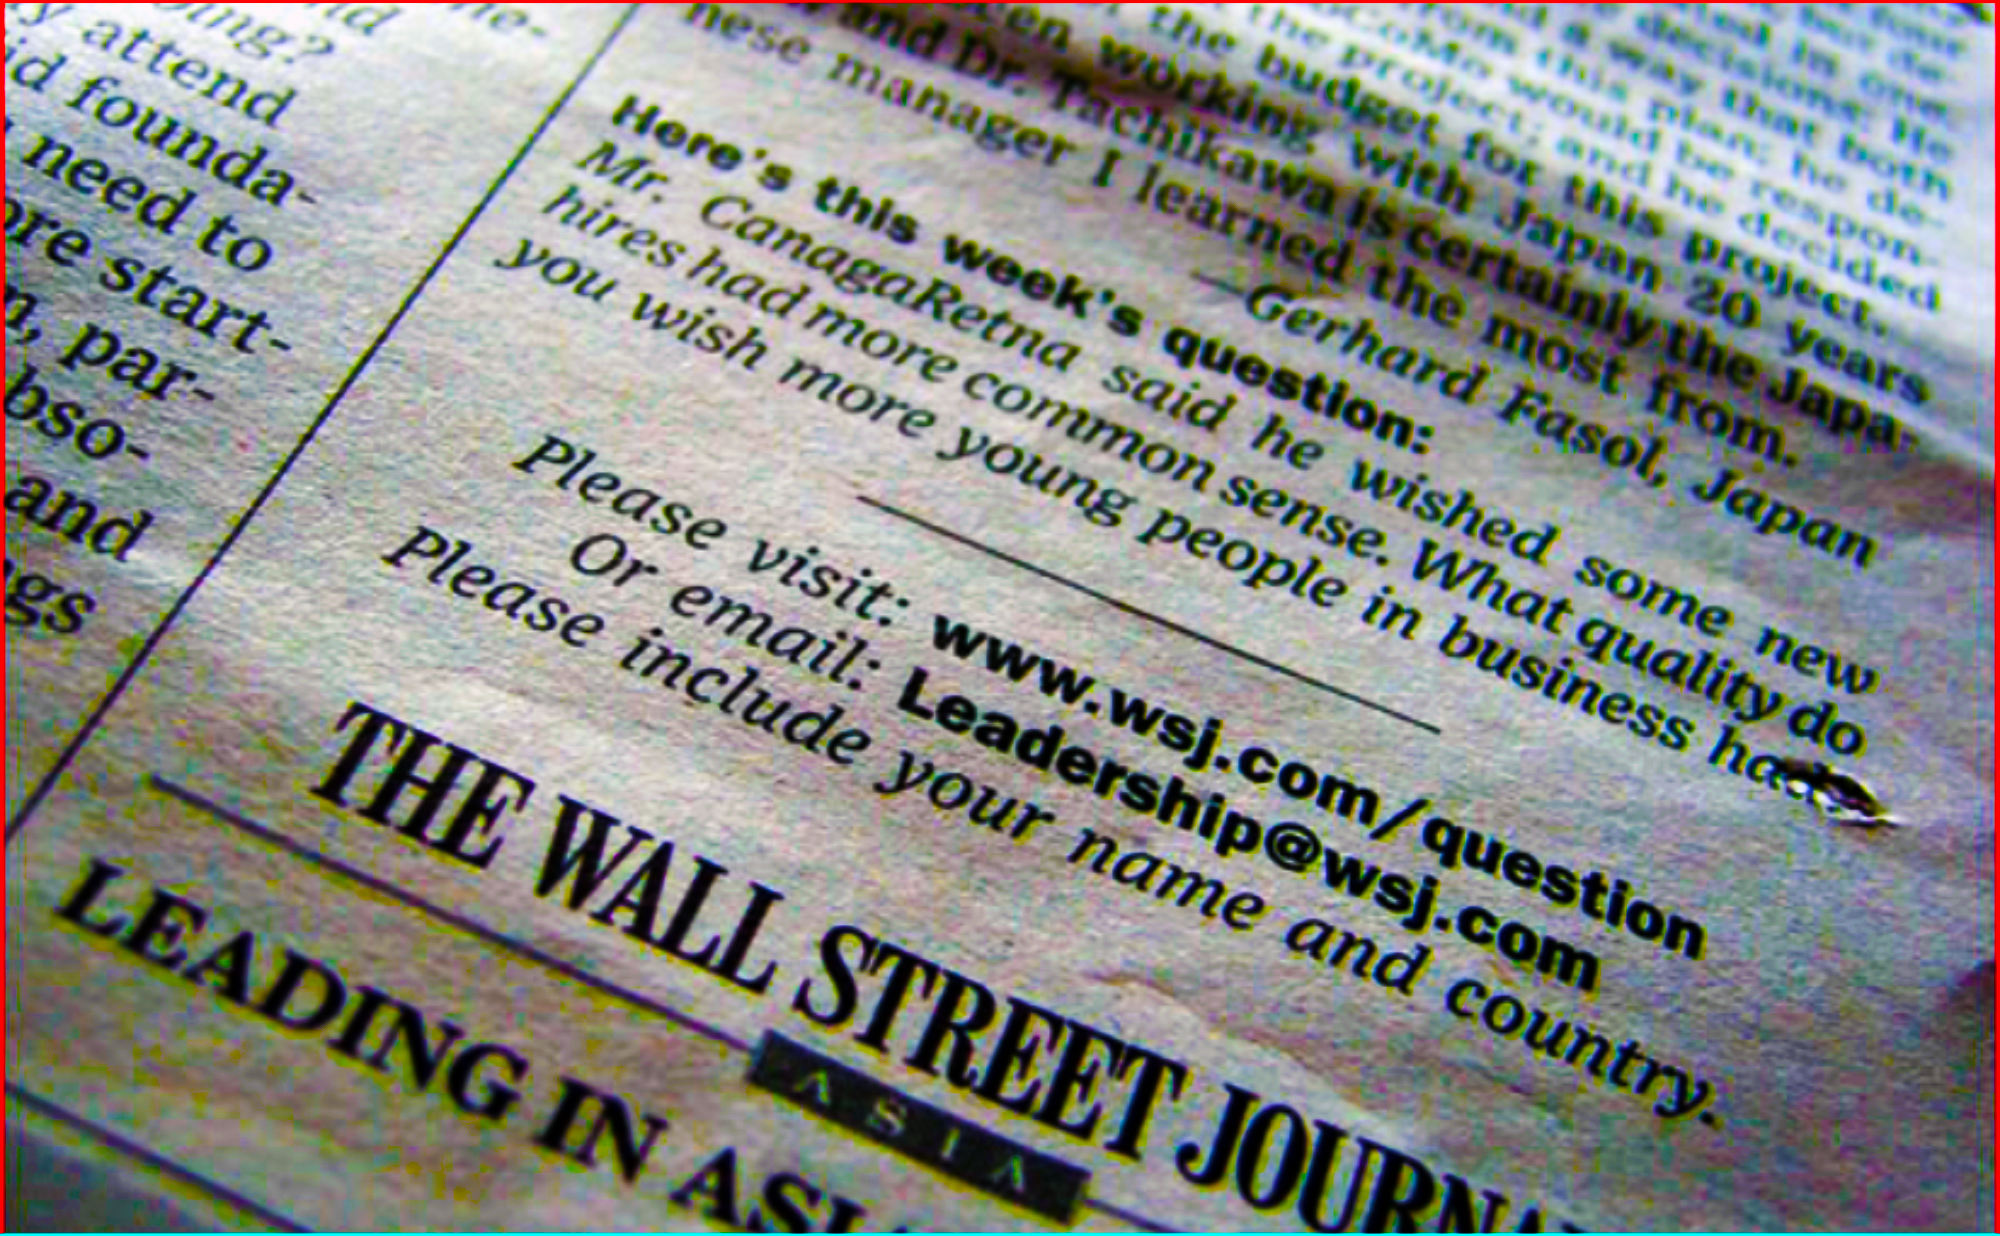 NTT Docomo CEO: Wall Street Journal “Leadership Question of the Week” – Japanese leadership